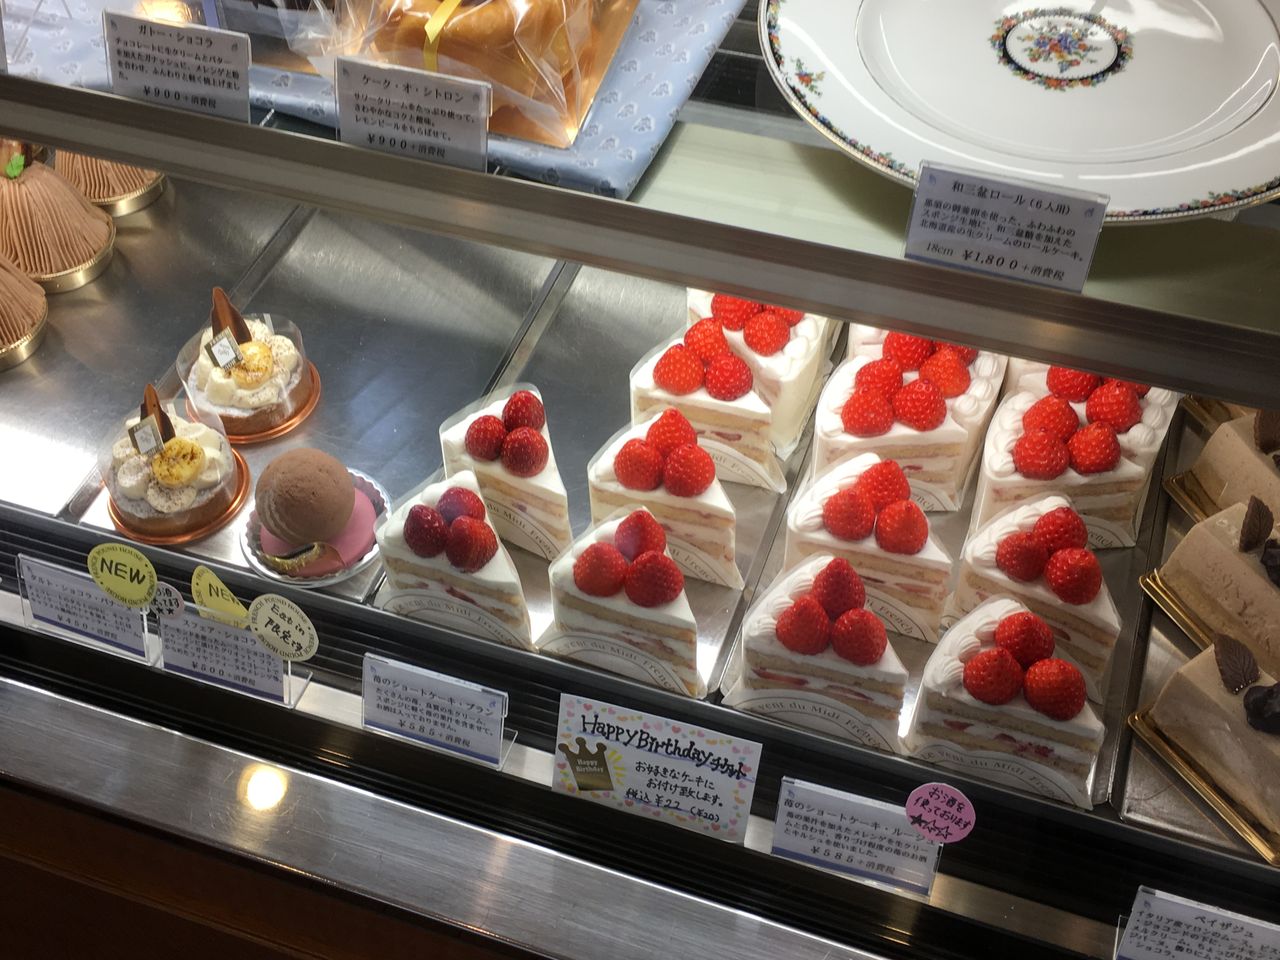 シュルプリーズと苺のショートケーキ フレンチパウンドハウス大和郷本店 はっちの蒸し豚